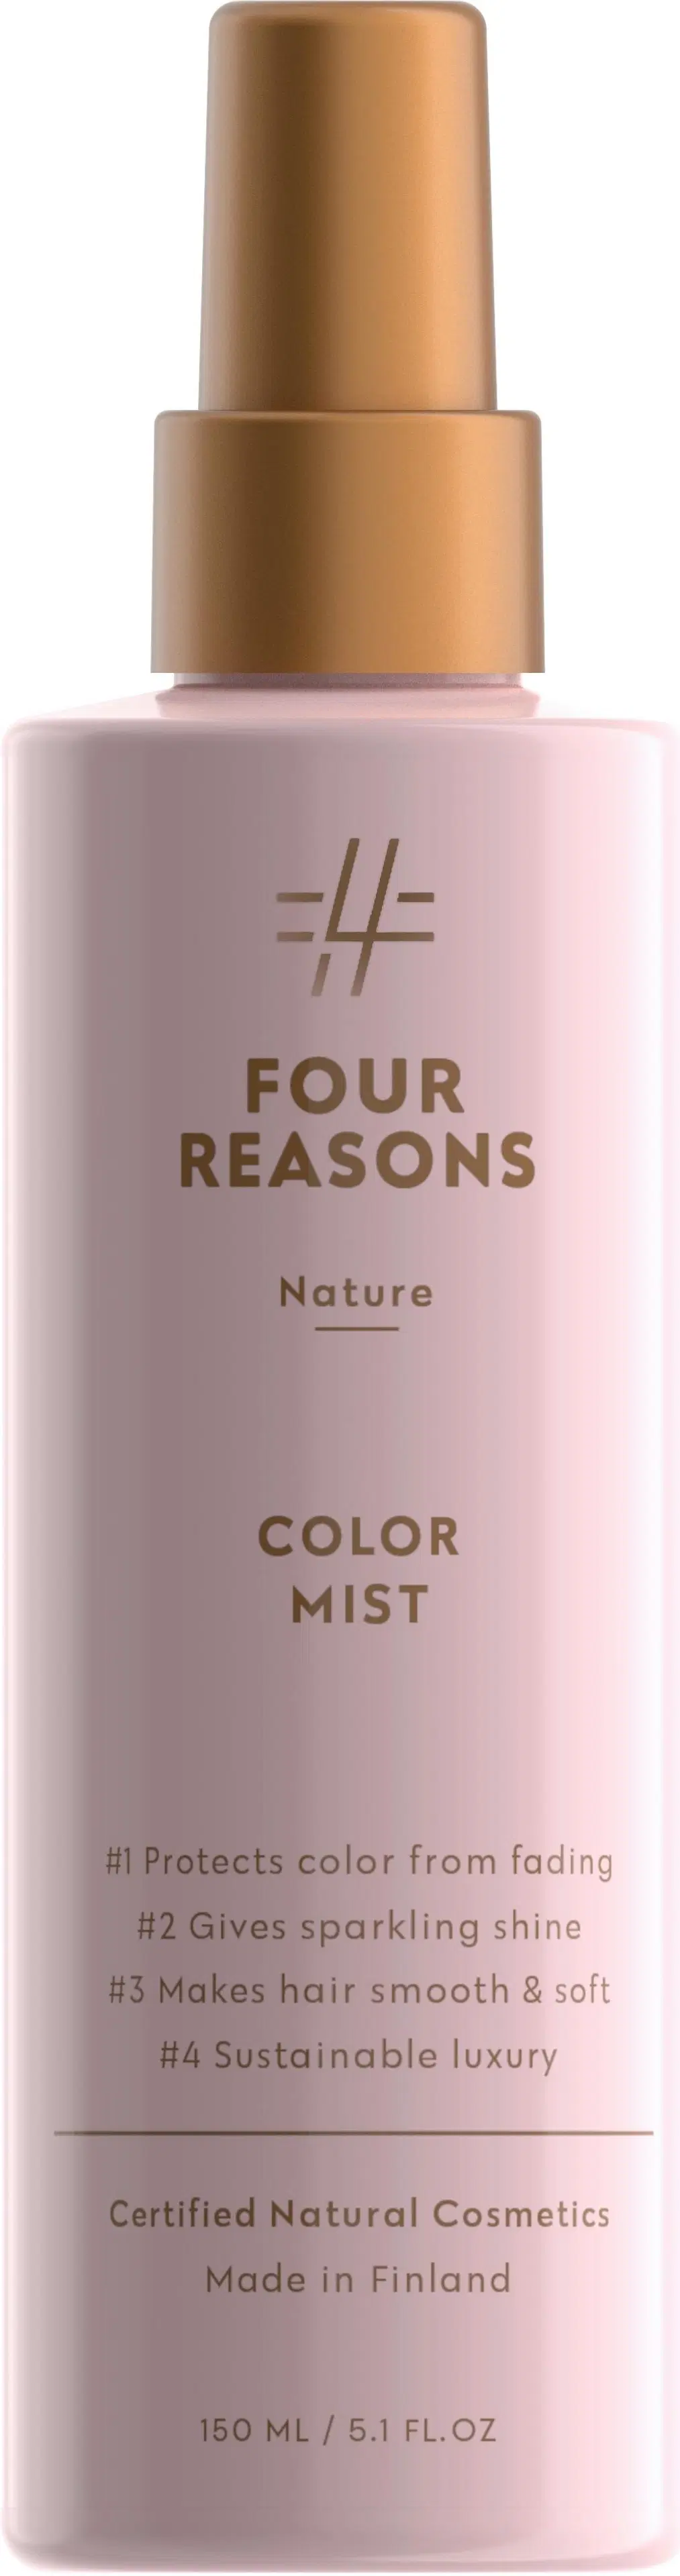 Four Reasons Nature Color Mist hoitosuihke 150 ml